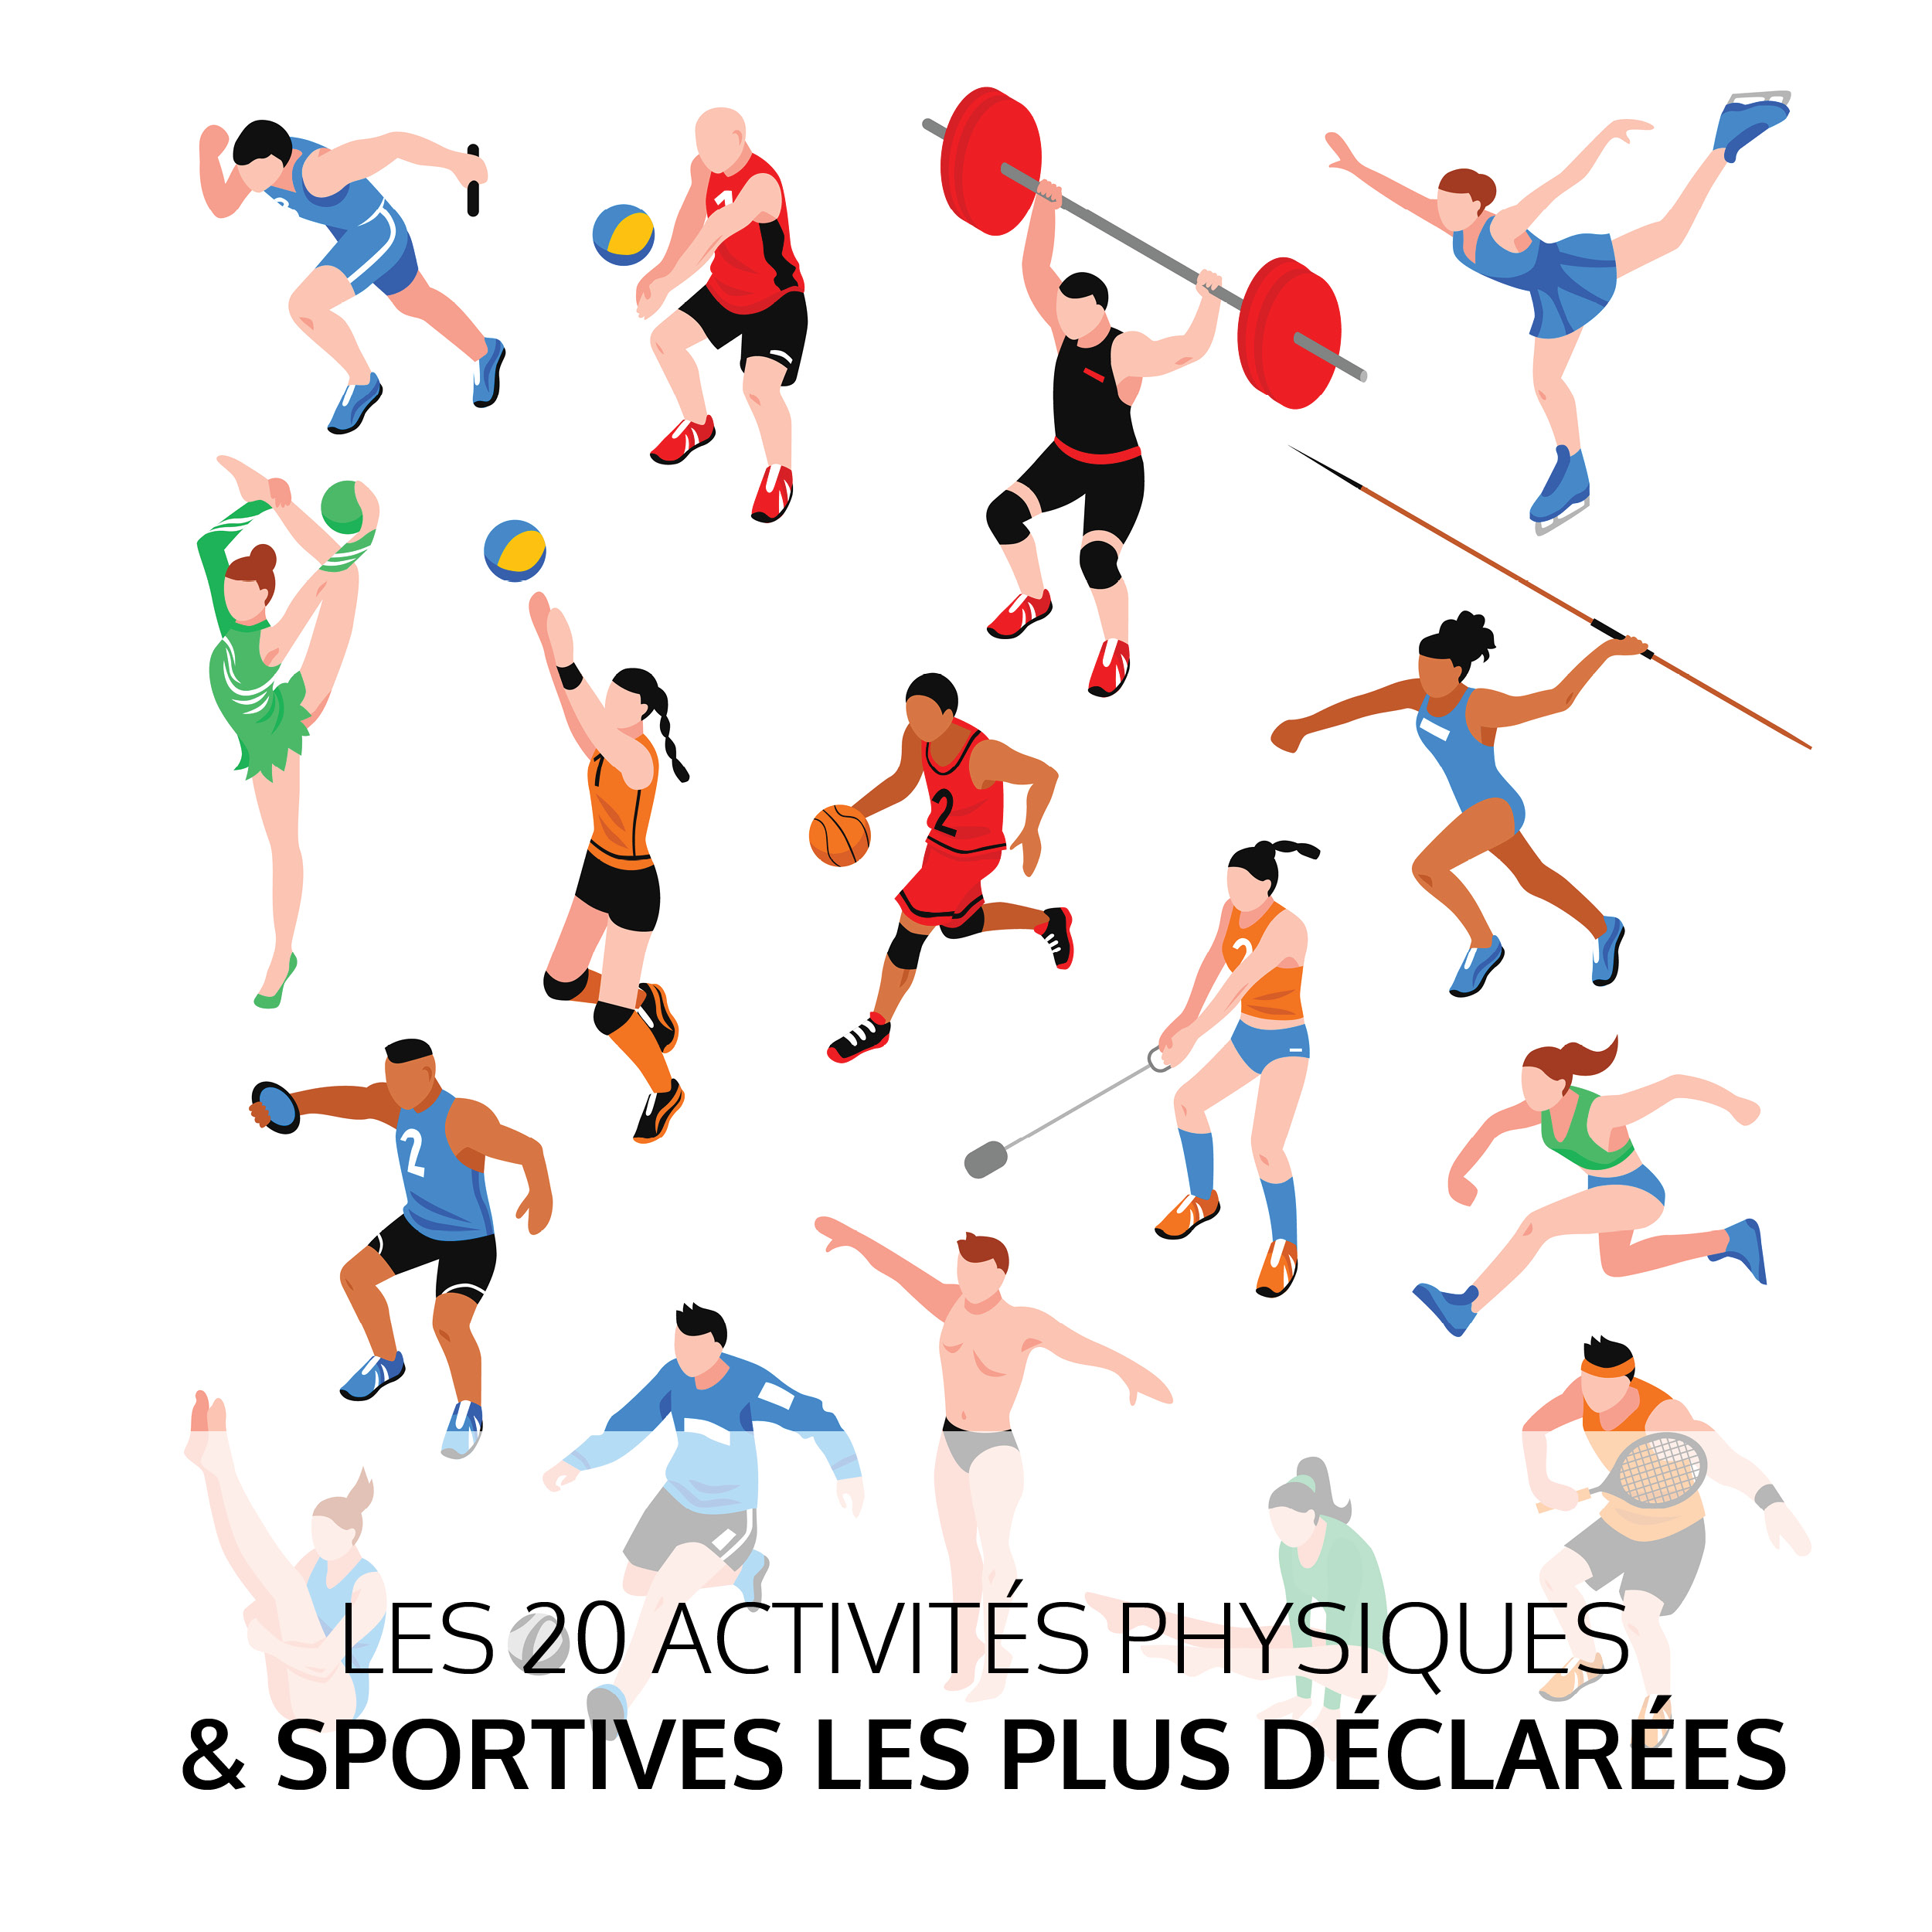 Les 20 activités physiques & sportives les plus déclarées